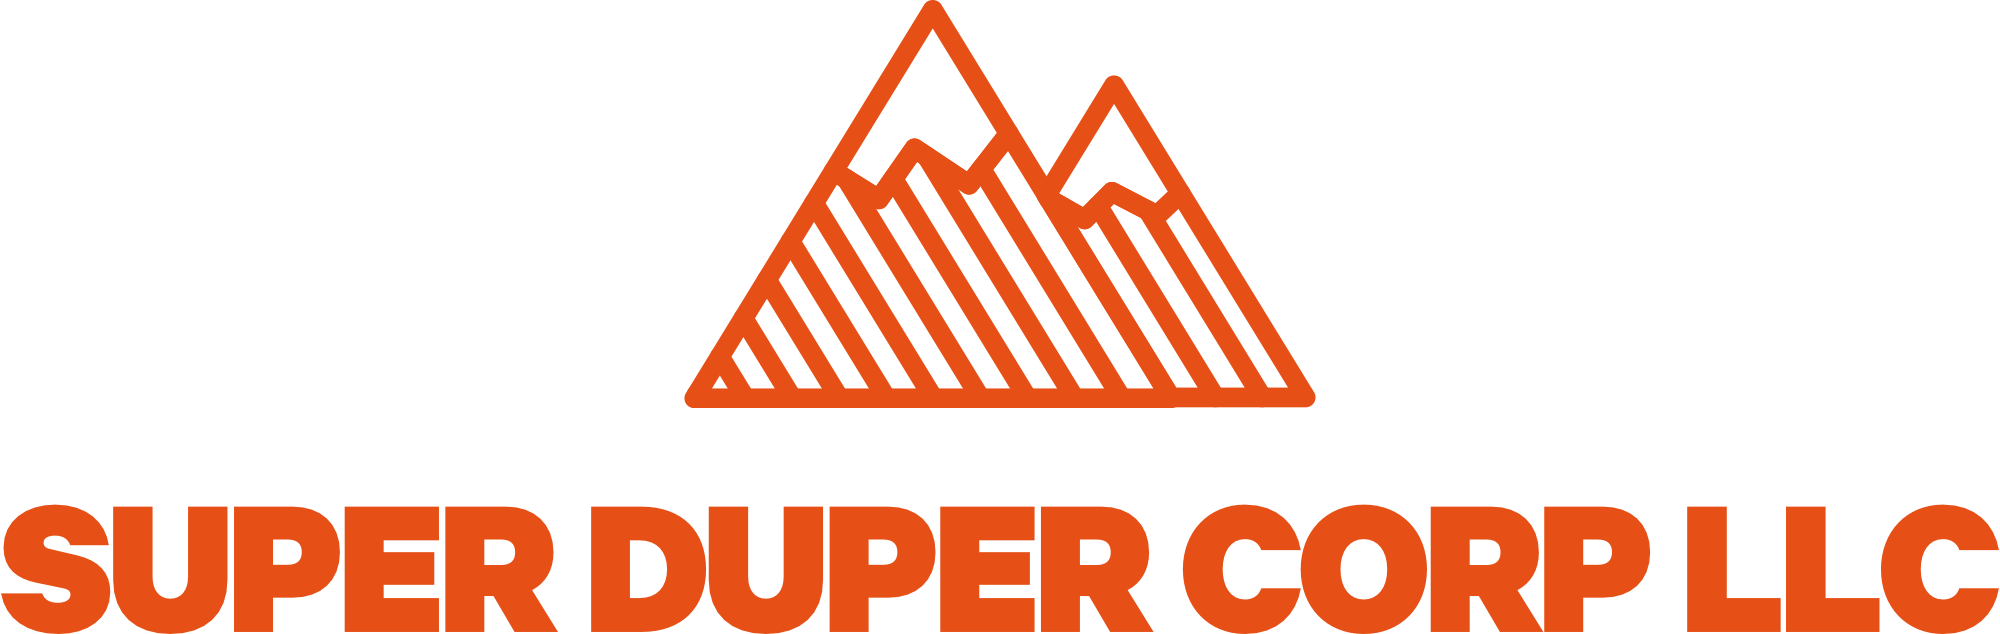 Super Duper Corp LLC